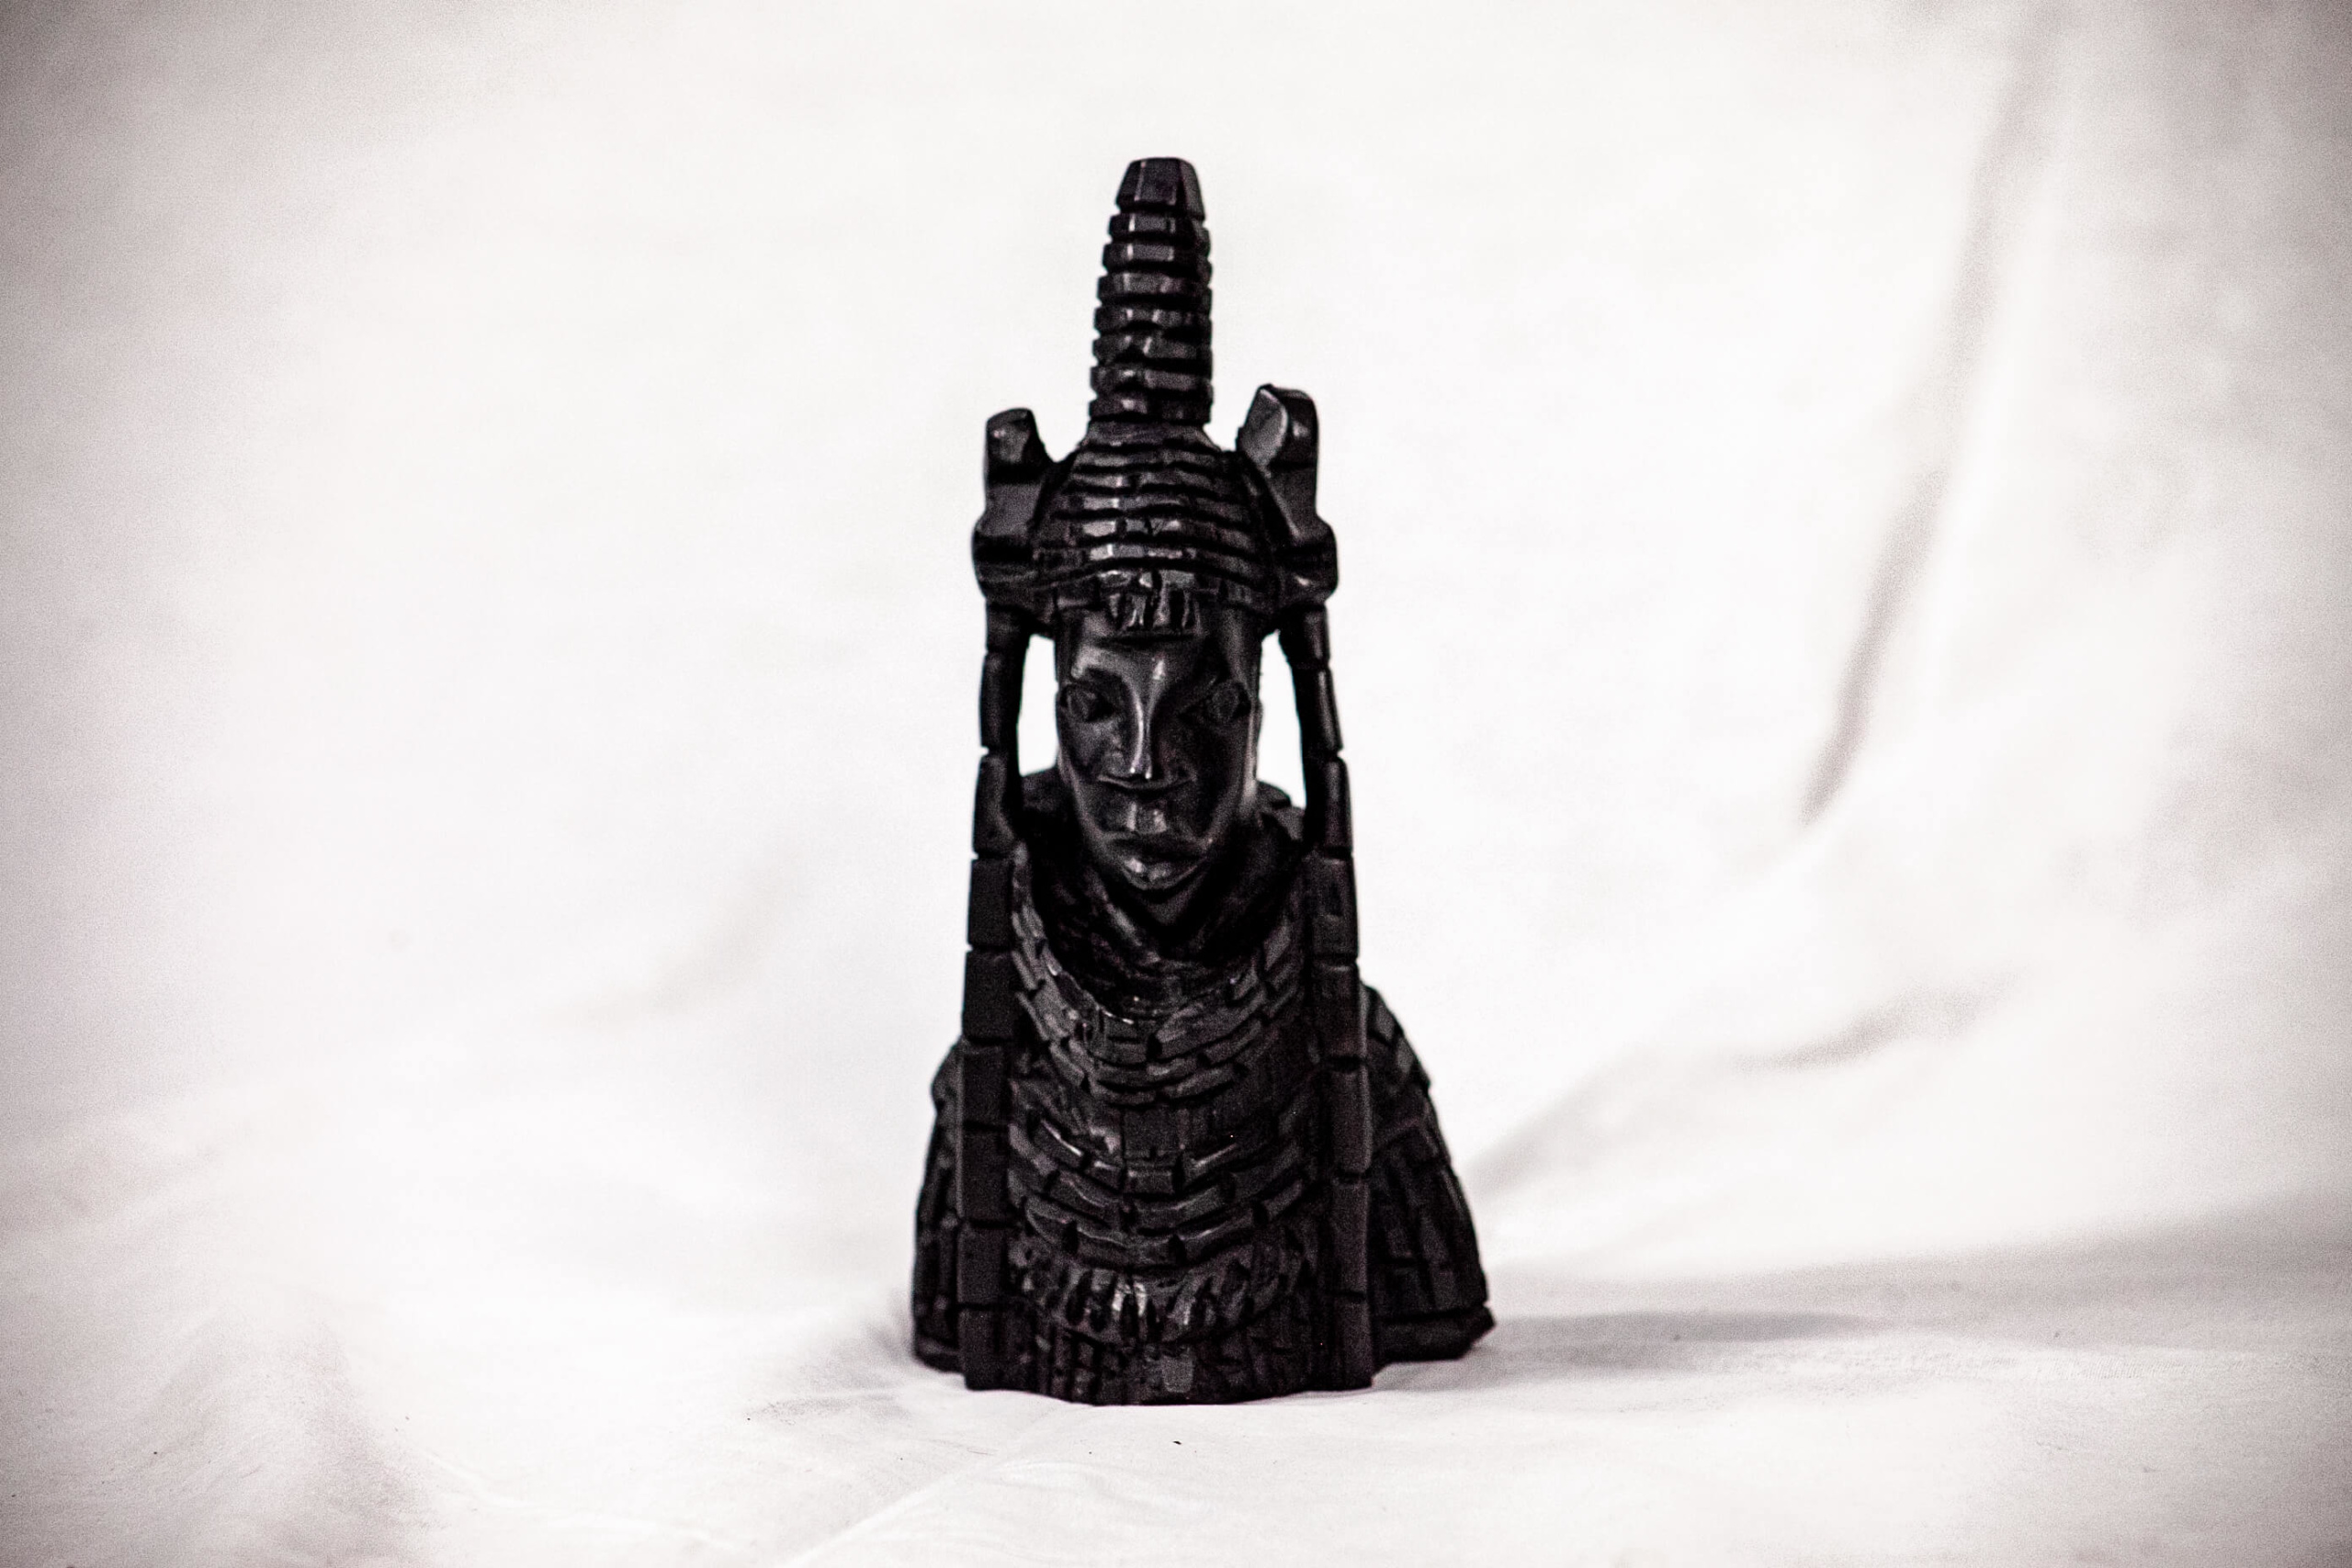 Wooden Sculpture Of Benin King and Queen